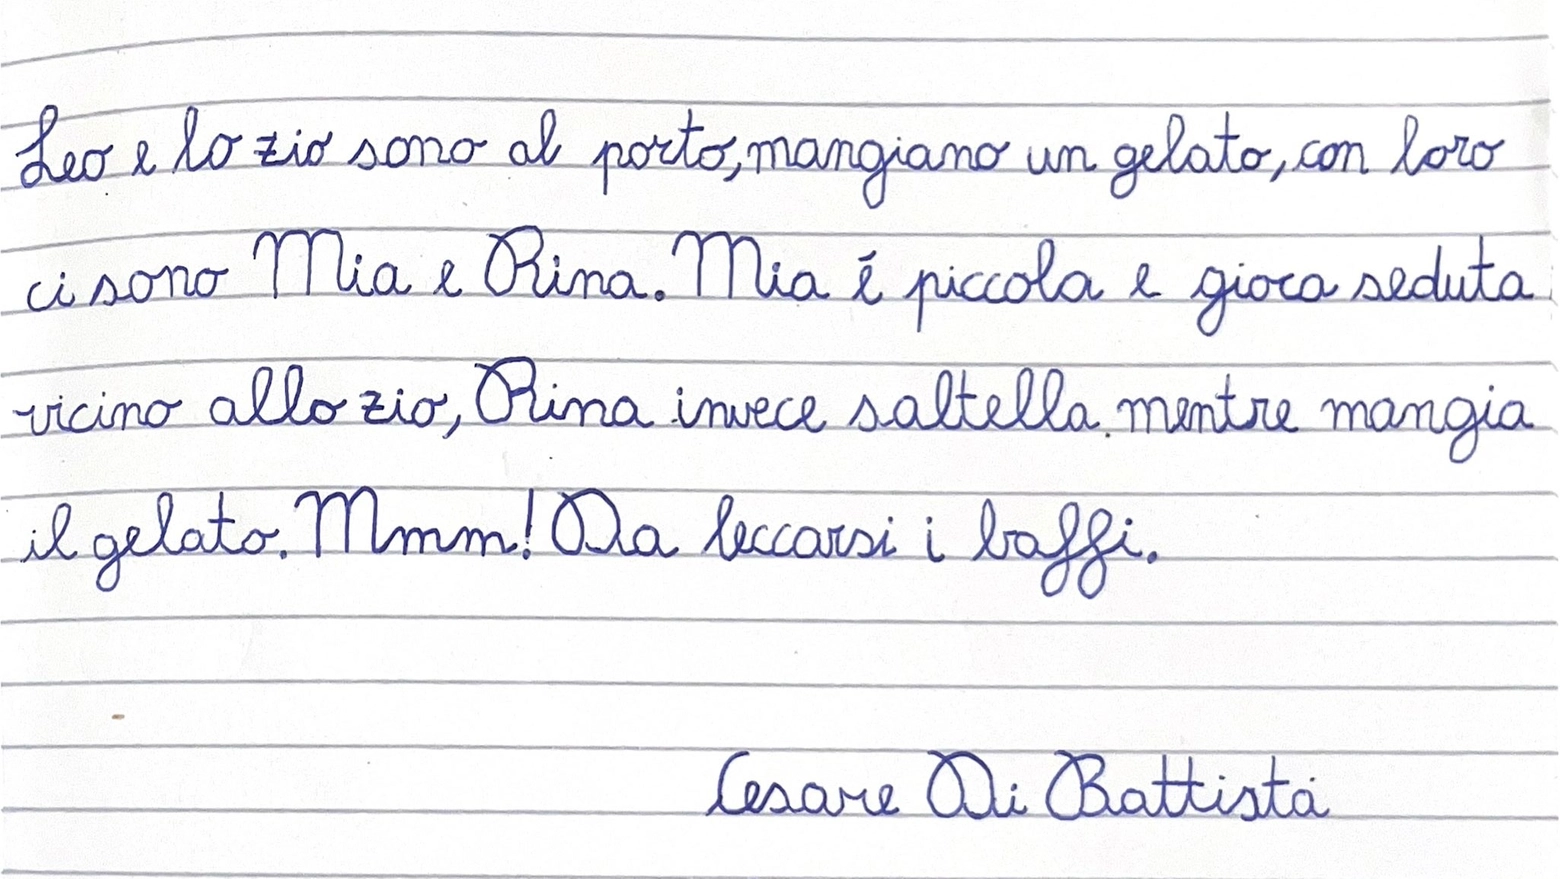 Il saggio di calligrafia di Cesare Di Battista, uno dei bambini premiati